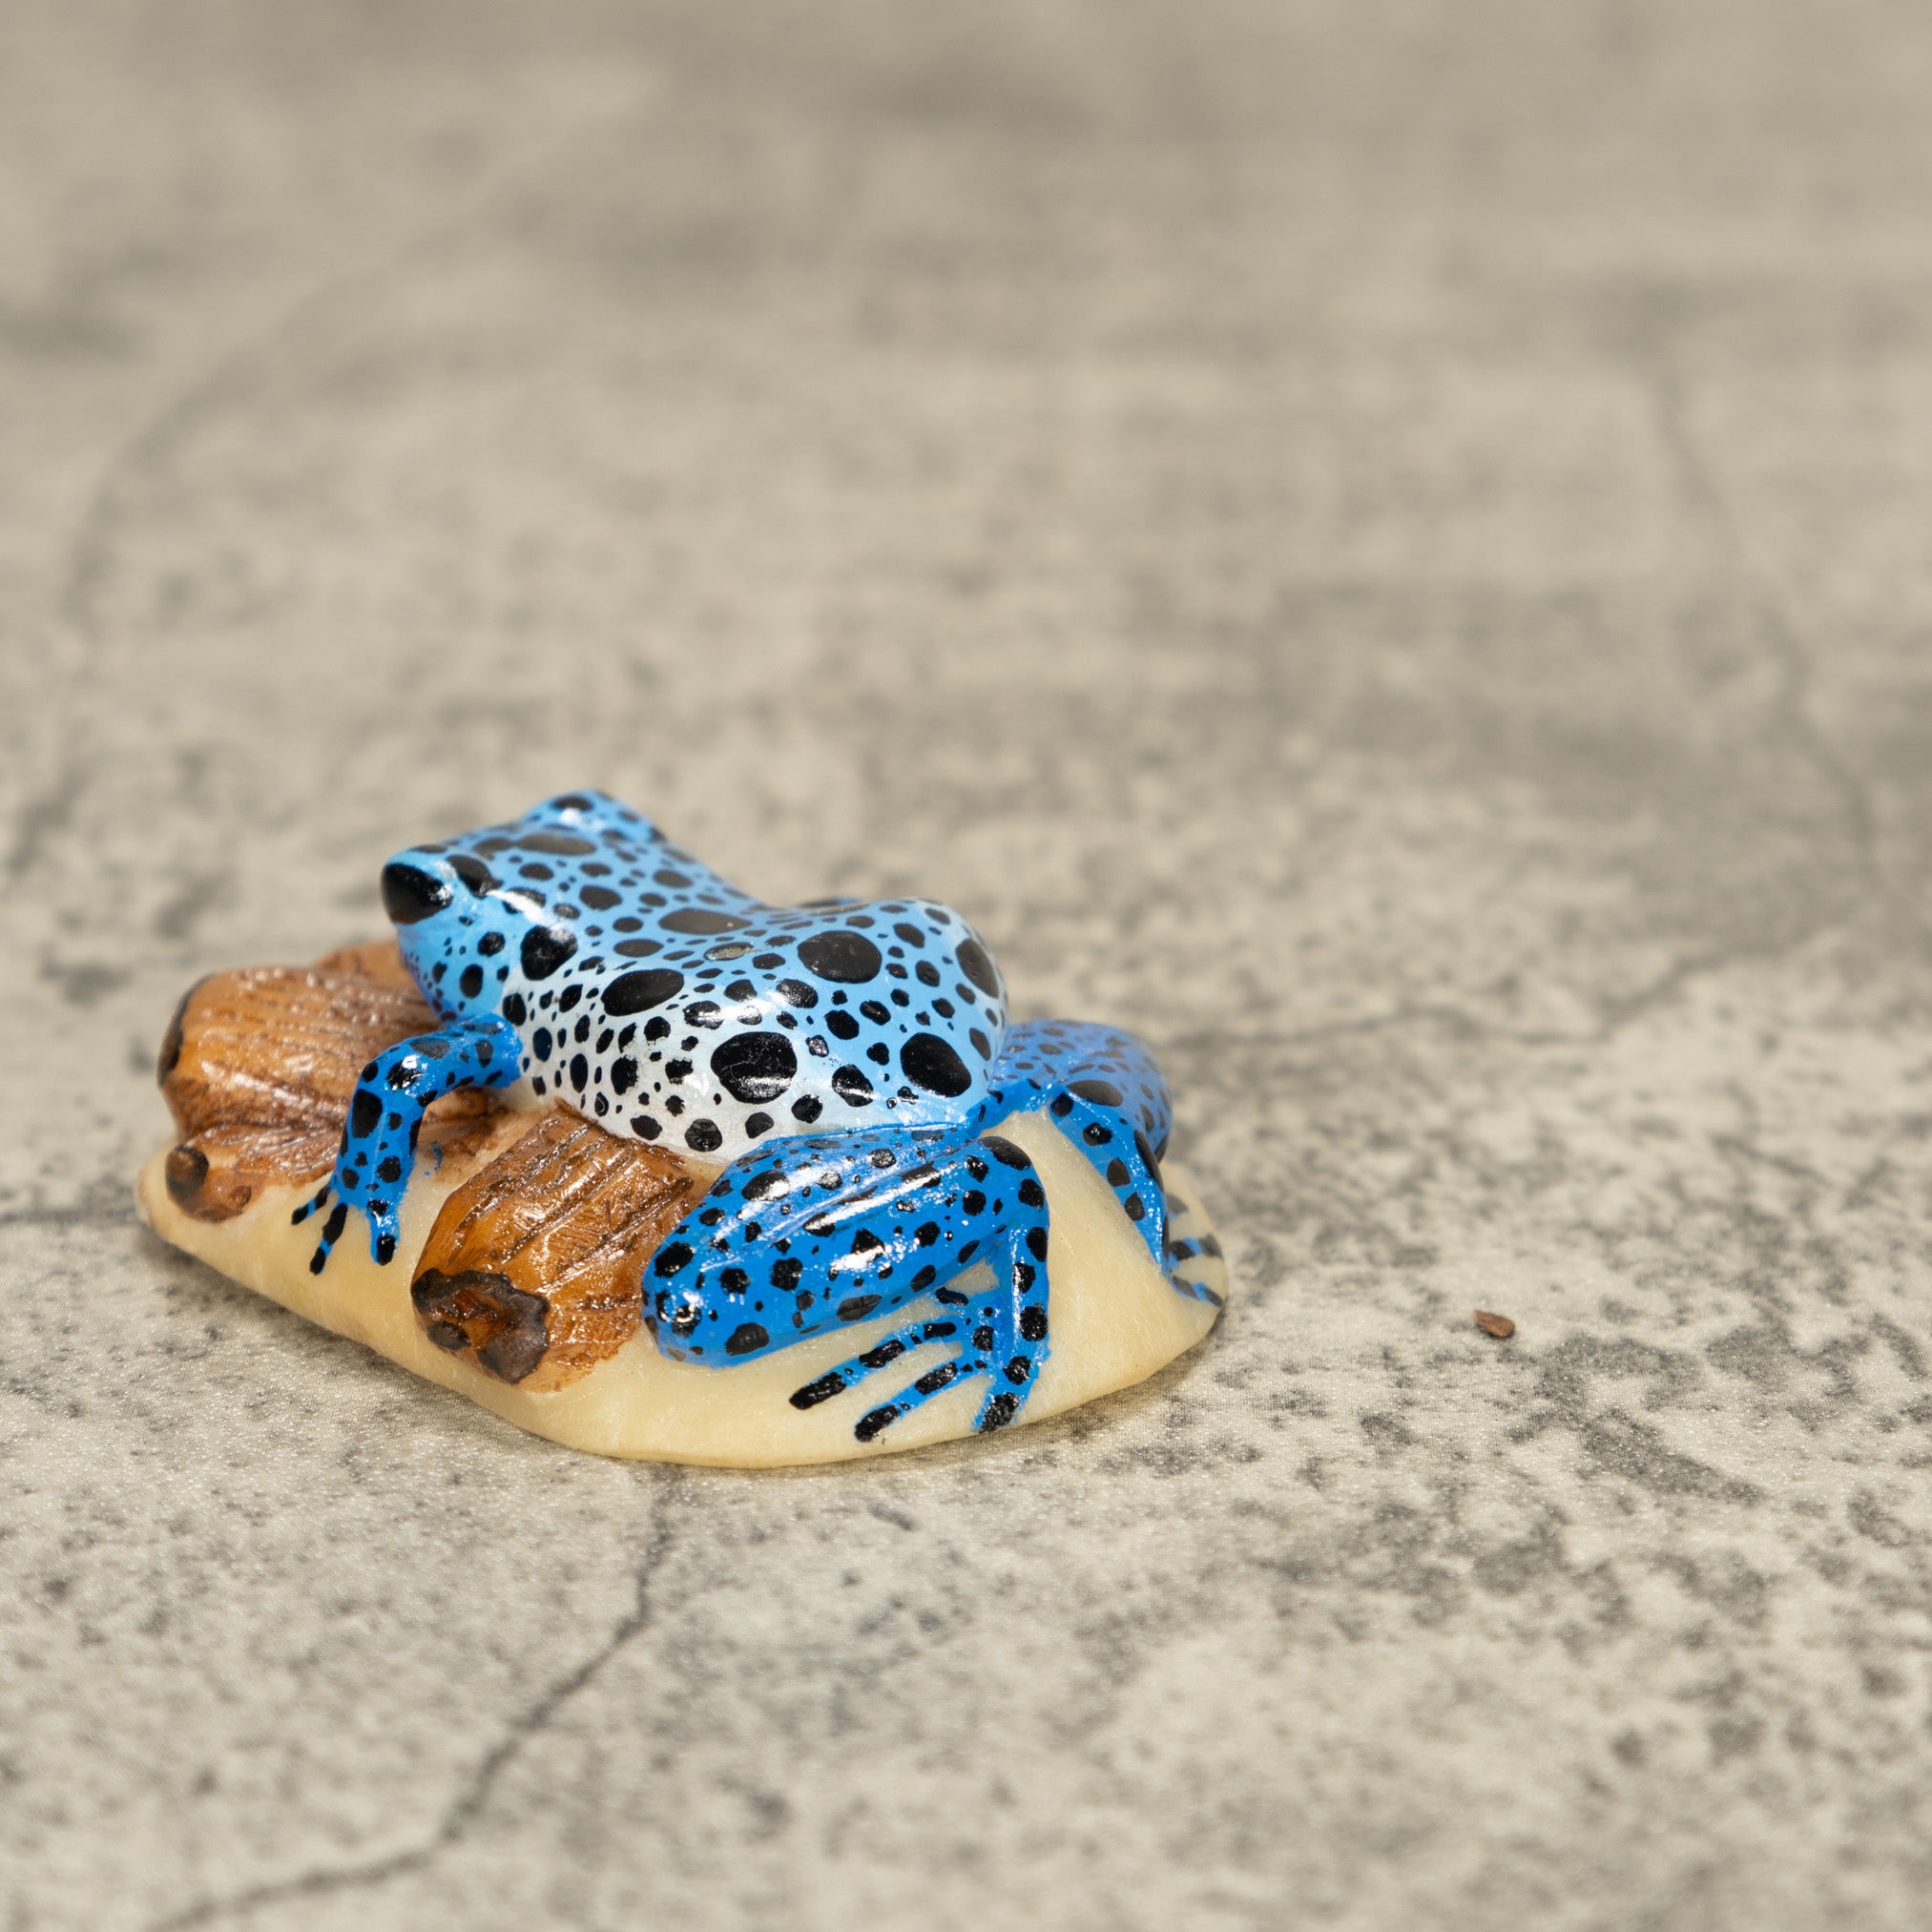 Blue Poison Dart Frog ON Log Tagua Nut Carving